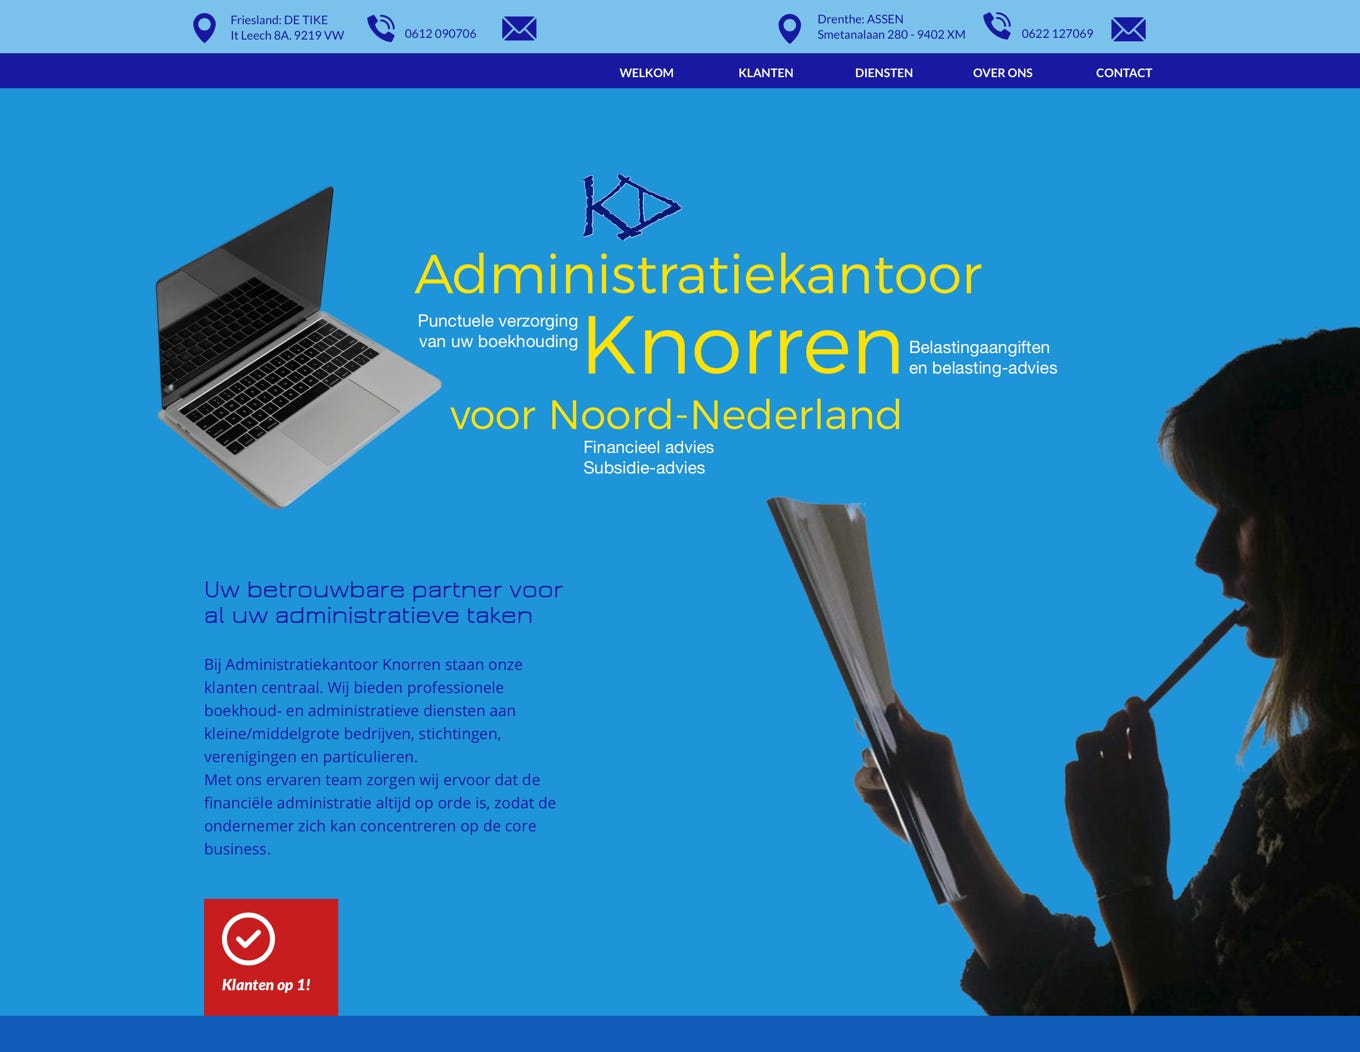 Homepage of the website of Administratiekantoor Knorren